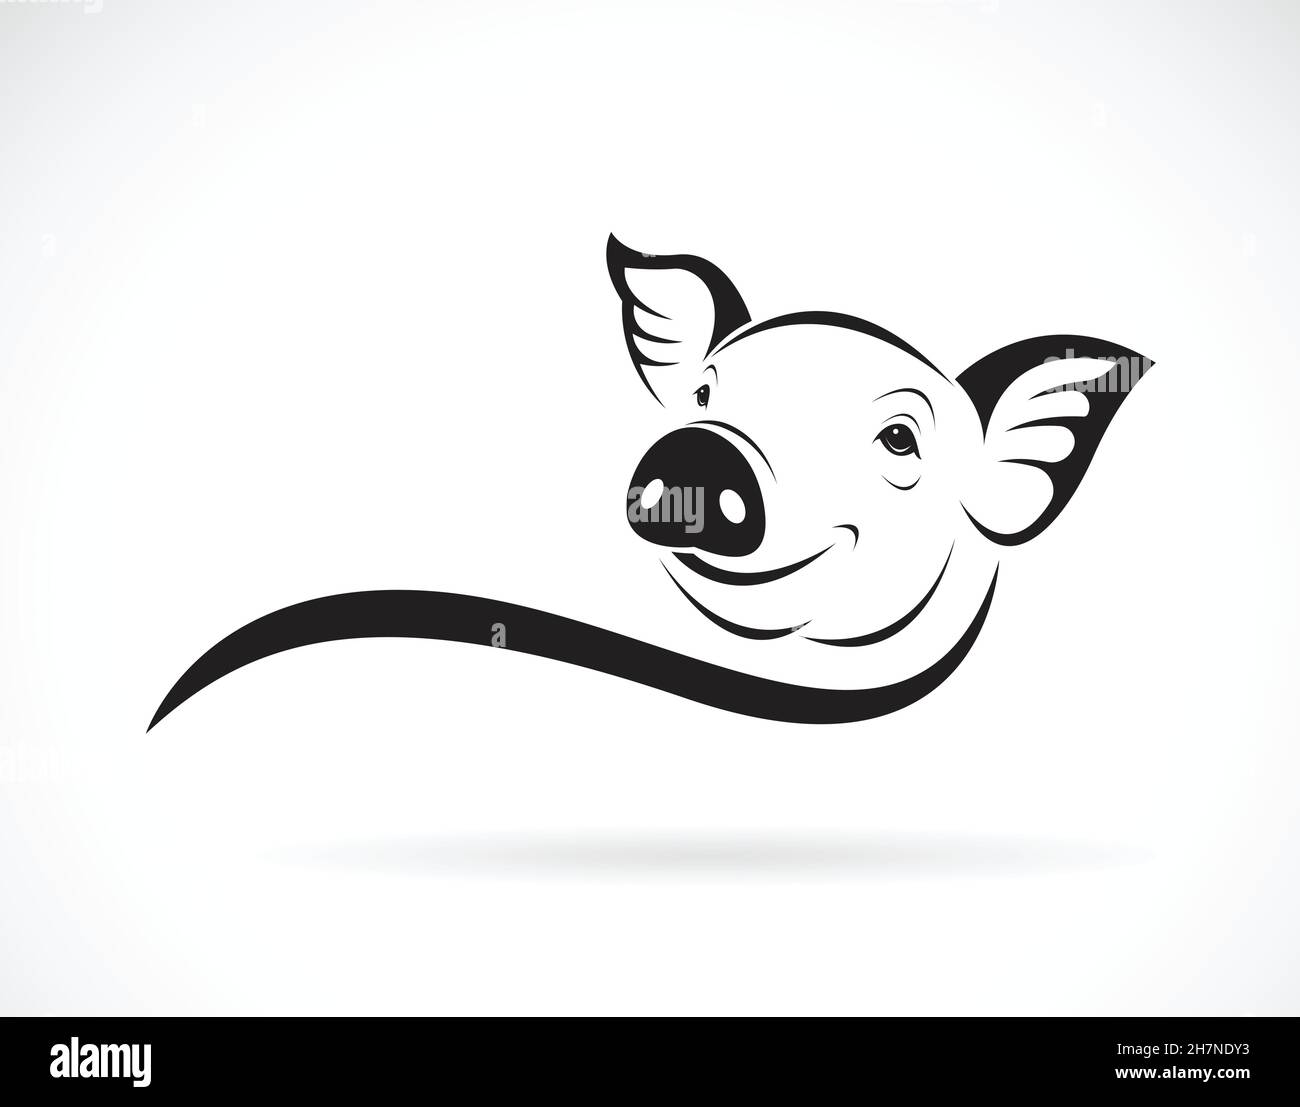 Vecteur de la tête de porc sur fond blanc. Ferme d'animaux. Illustration vectorielle superposée facile à modifier. Illustration de Vecteur